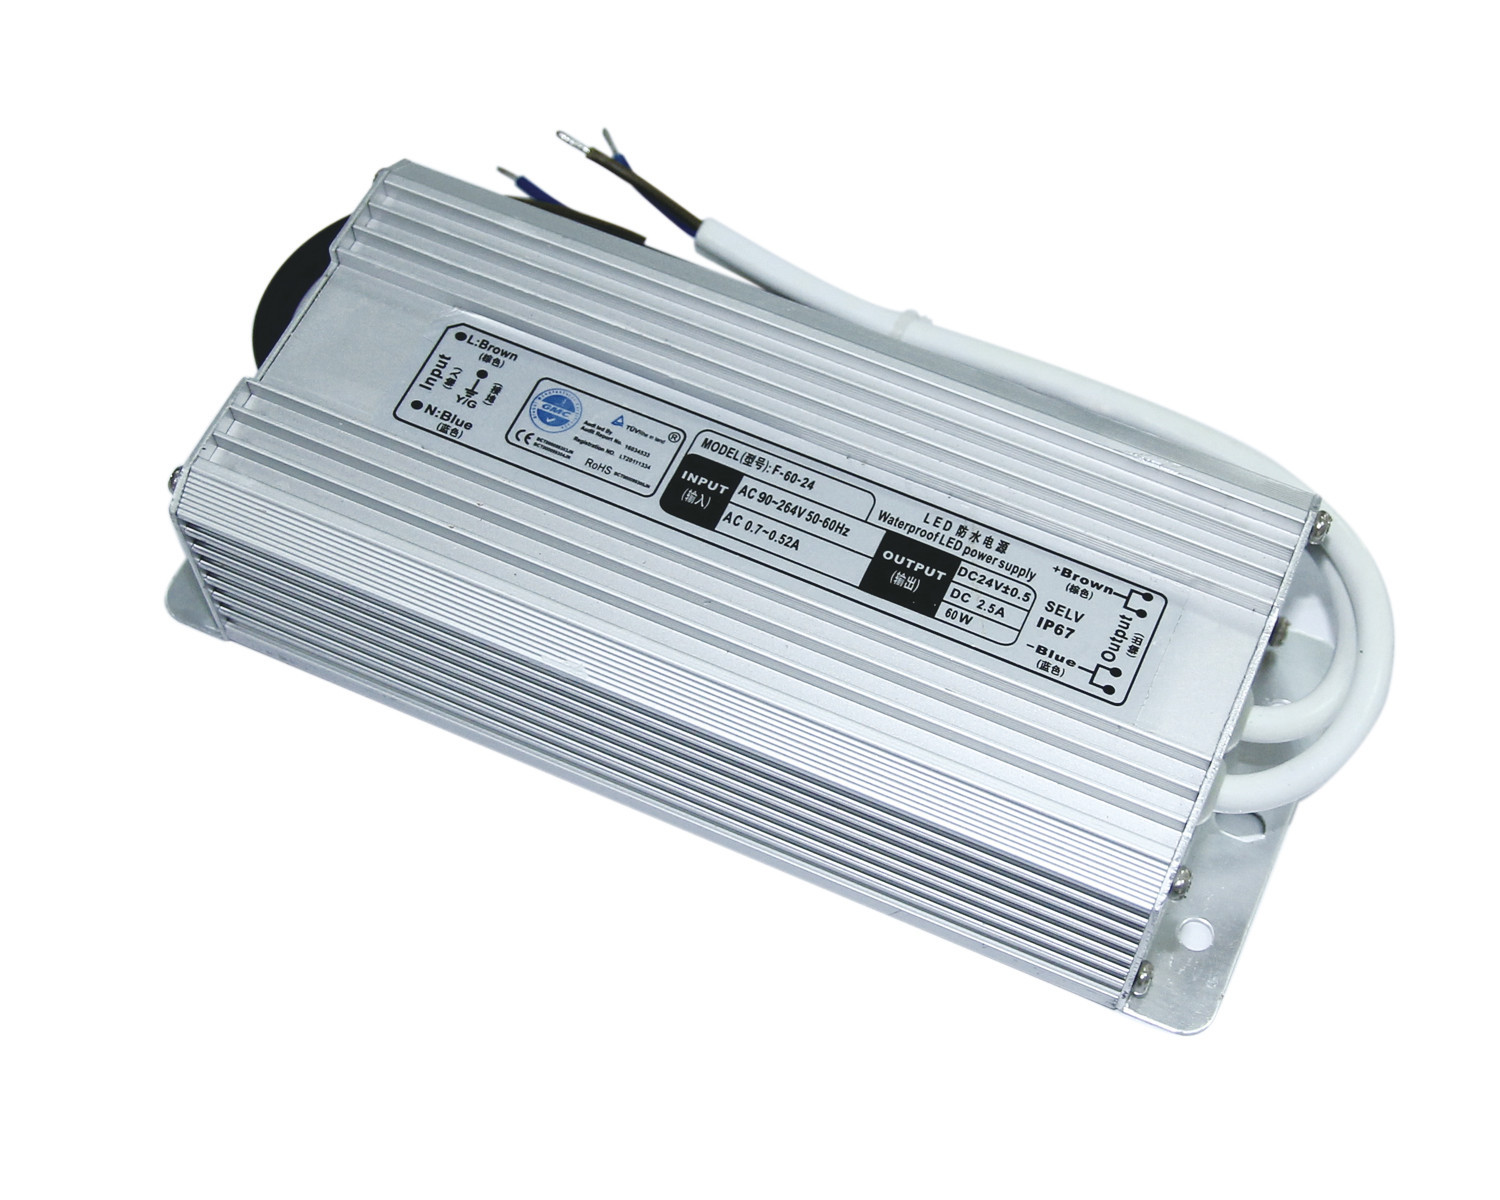 C.C 60W du Portable 24 V imperméabilisent la caisse de Platic d'alimentation d'énergie de conducteur de LED avec EN55022 la classe A